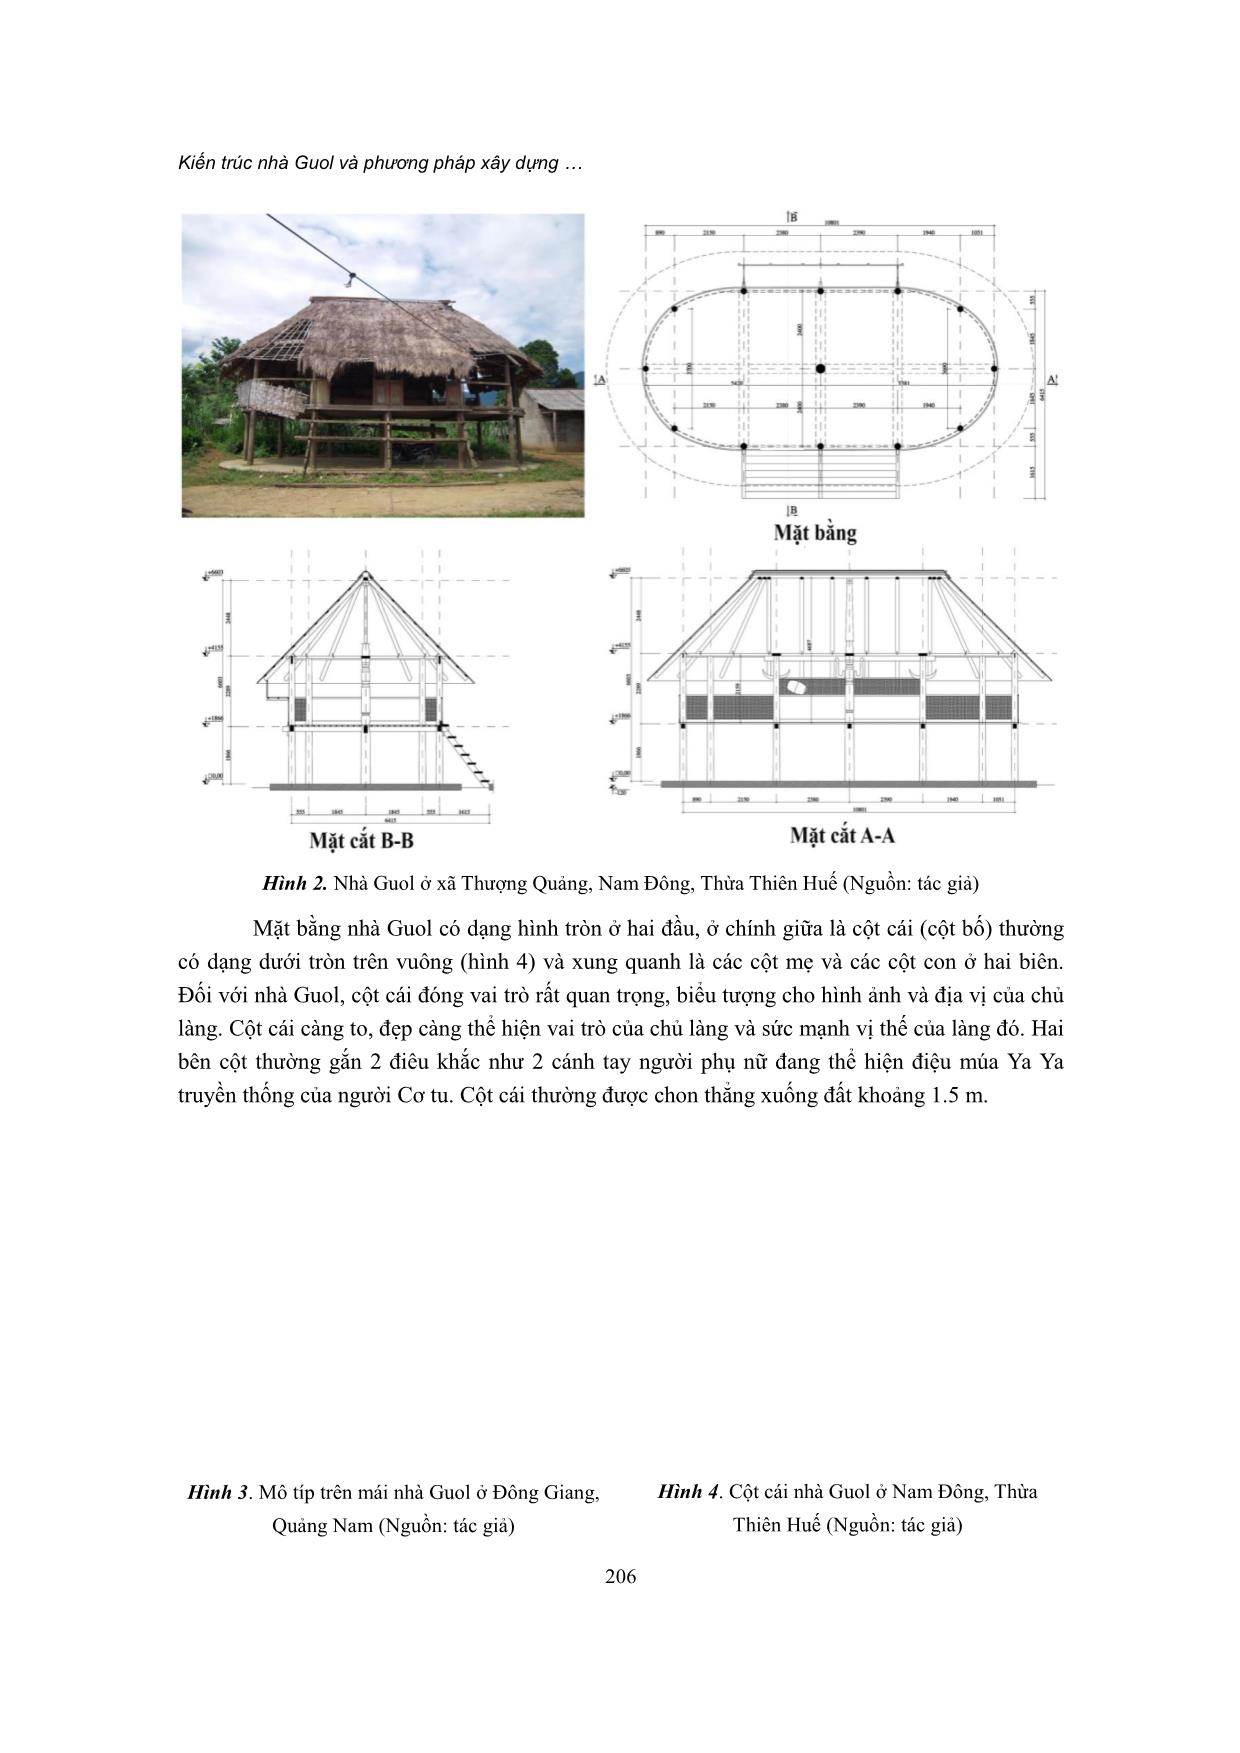 Kiến trúc nhà Guol và phương pháp xây dựng bằng kích thước cơ thể của người cơ tu trang 4